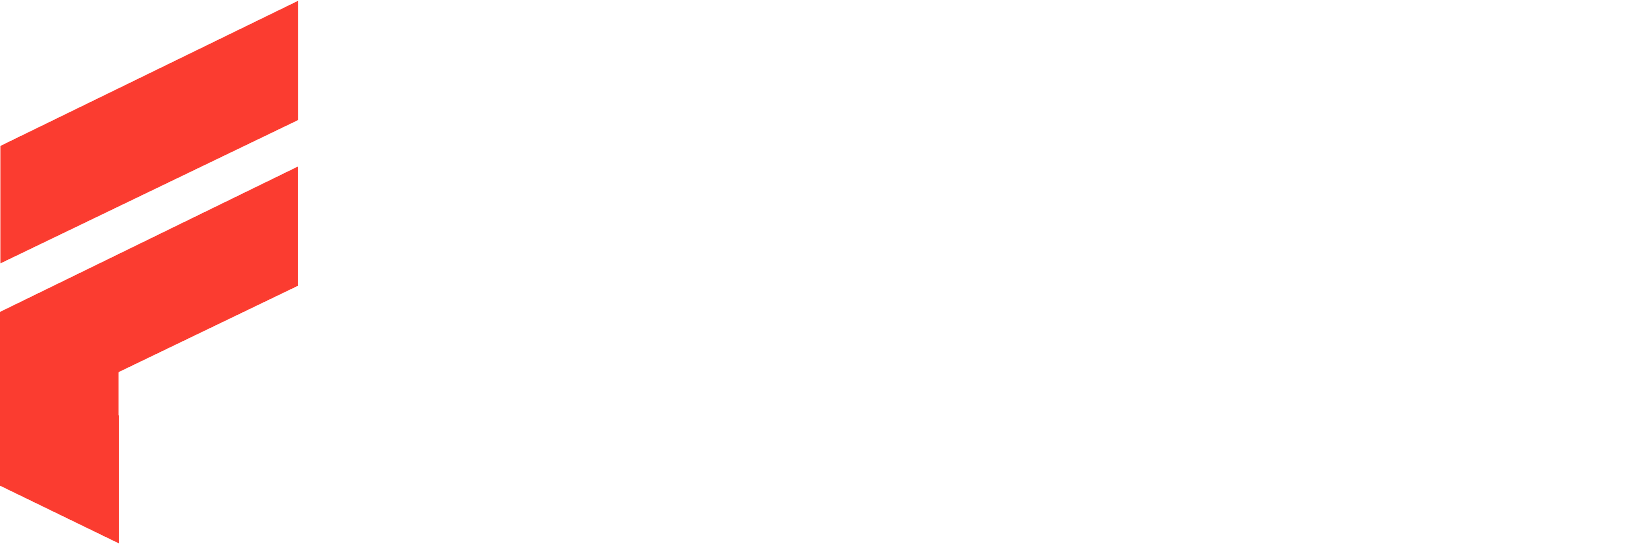 Fierce Church